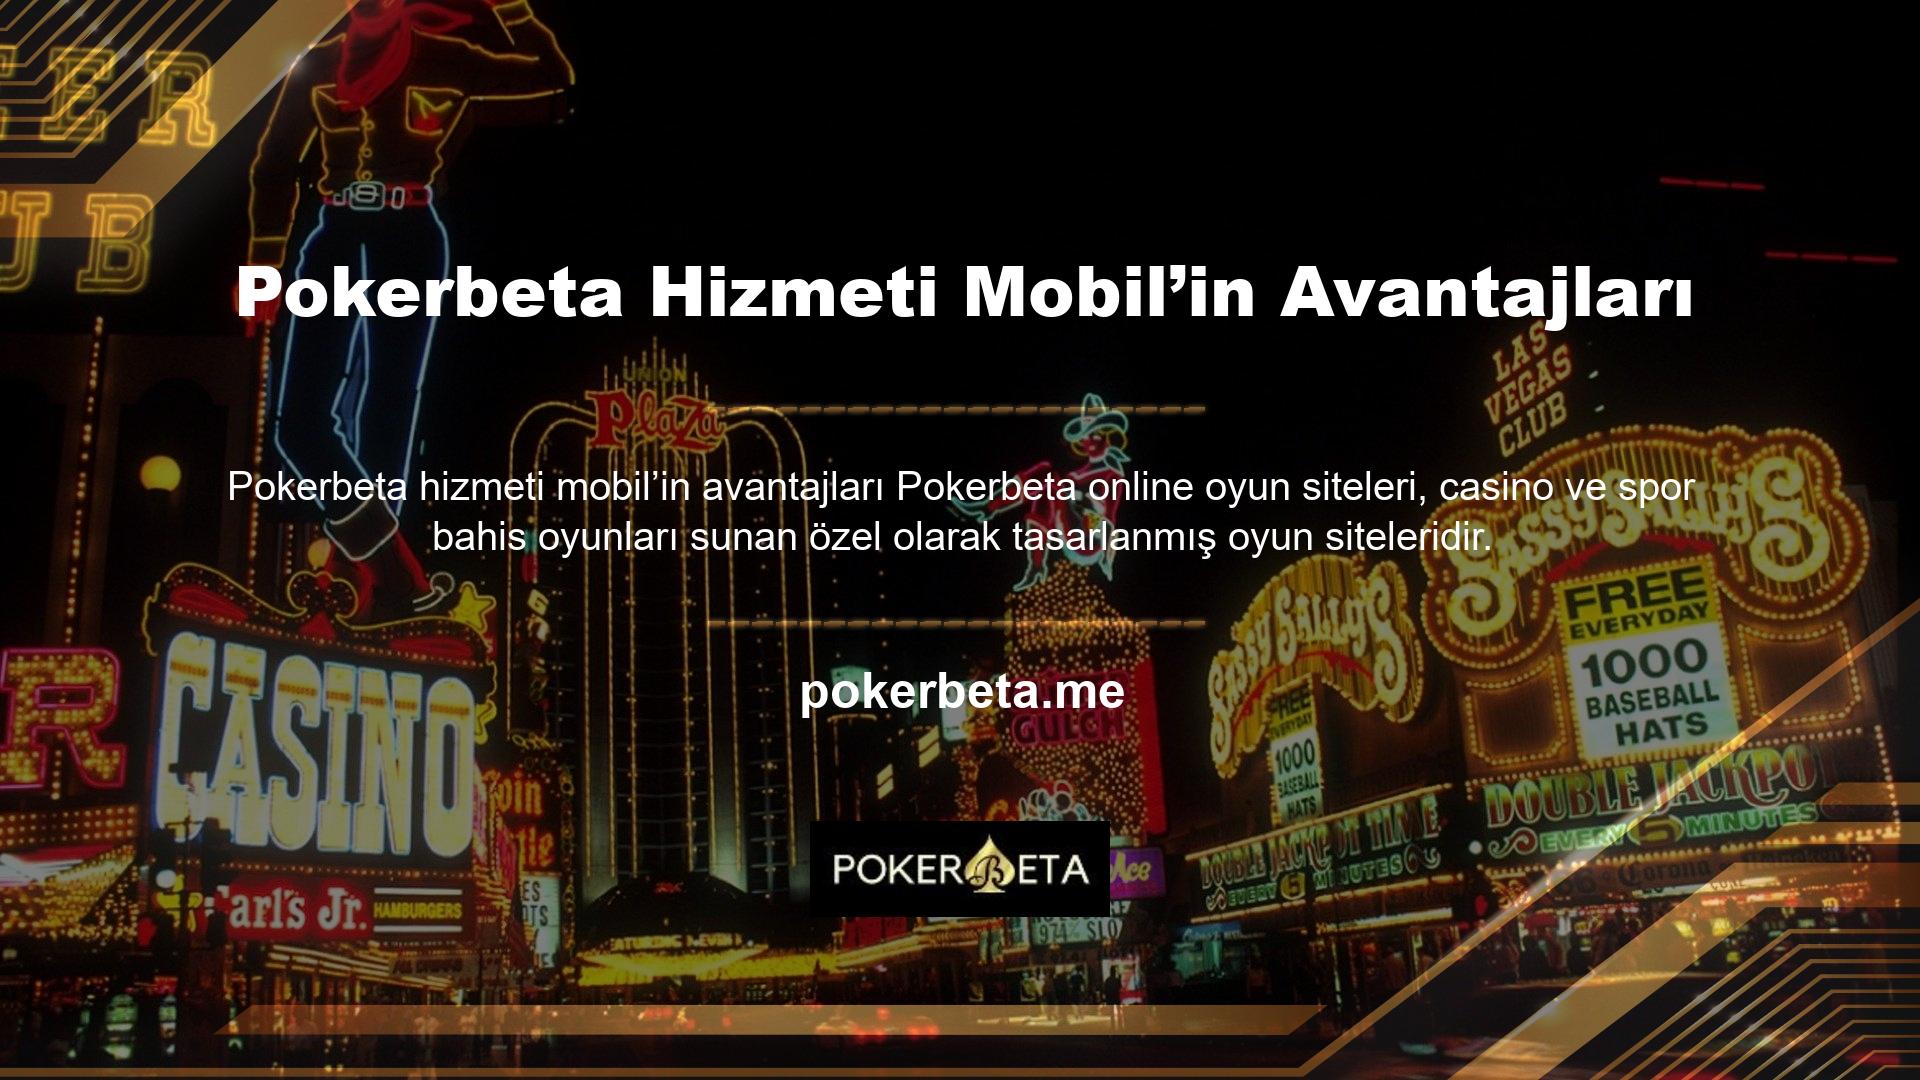 Online oyun lisansı vardır ve üyelik sistemi Pokerbeta hizmeti mobilin avantajları ile çalışır